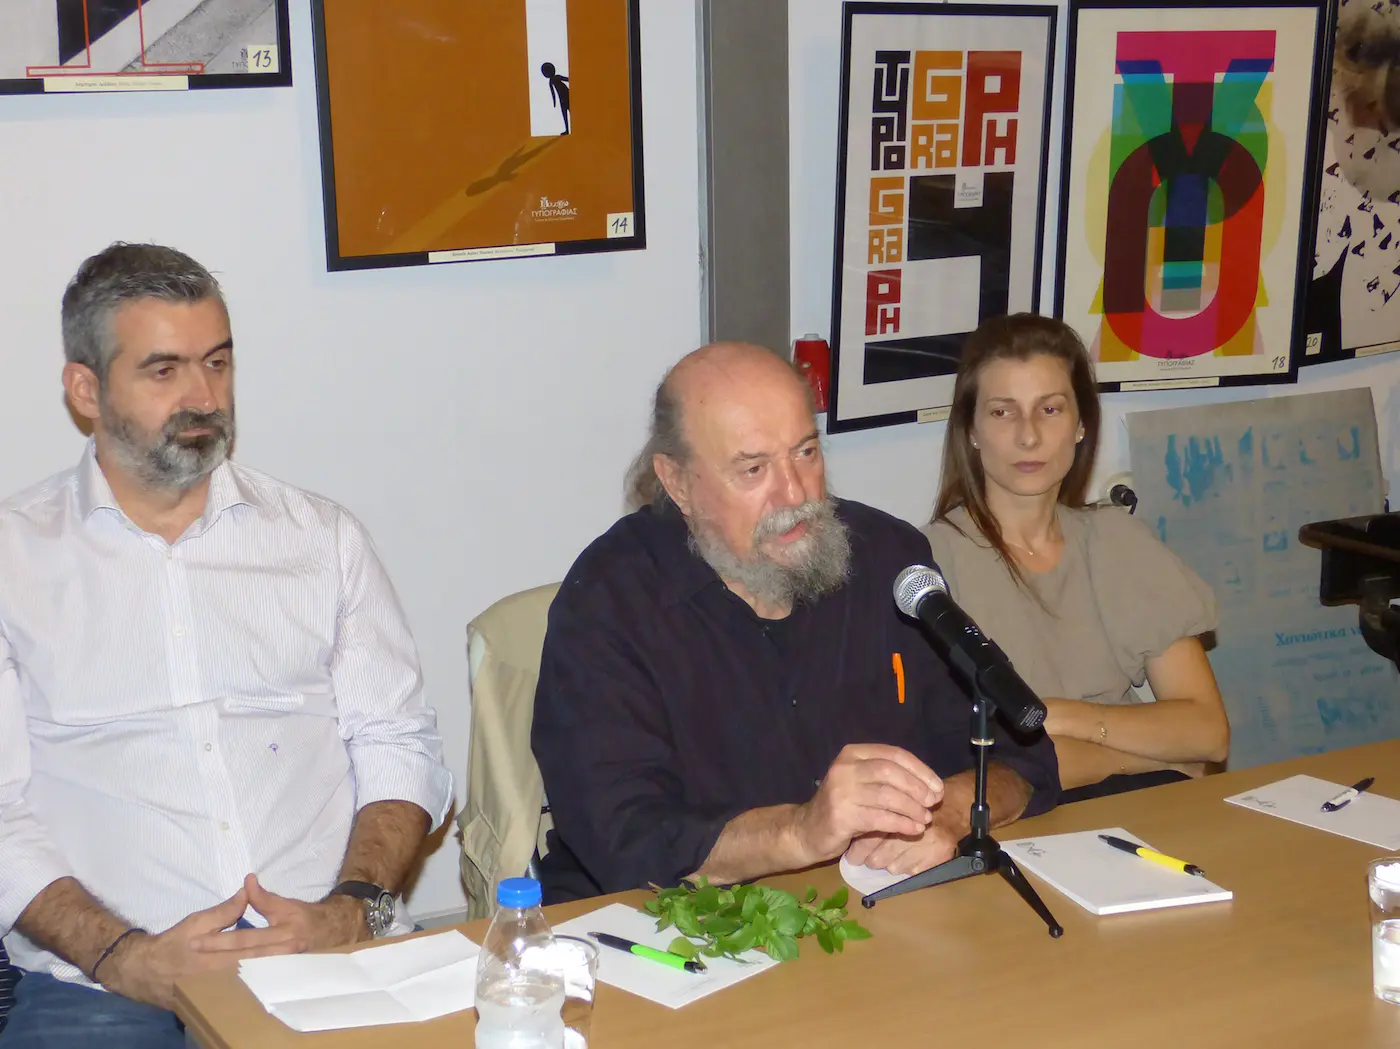 Τα παρόντα μέλη της κριτικής επιτροπής (από αριστερά): Αλέξανδρος Κοκκόλας, Σπύρος Ορνεράκης, Λίλα Καλογερή.